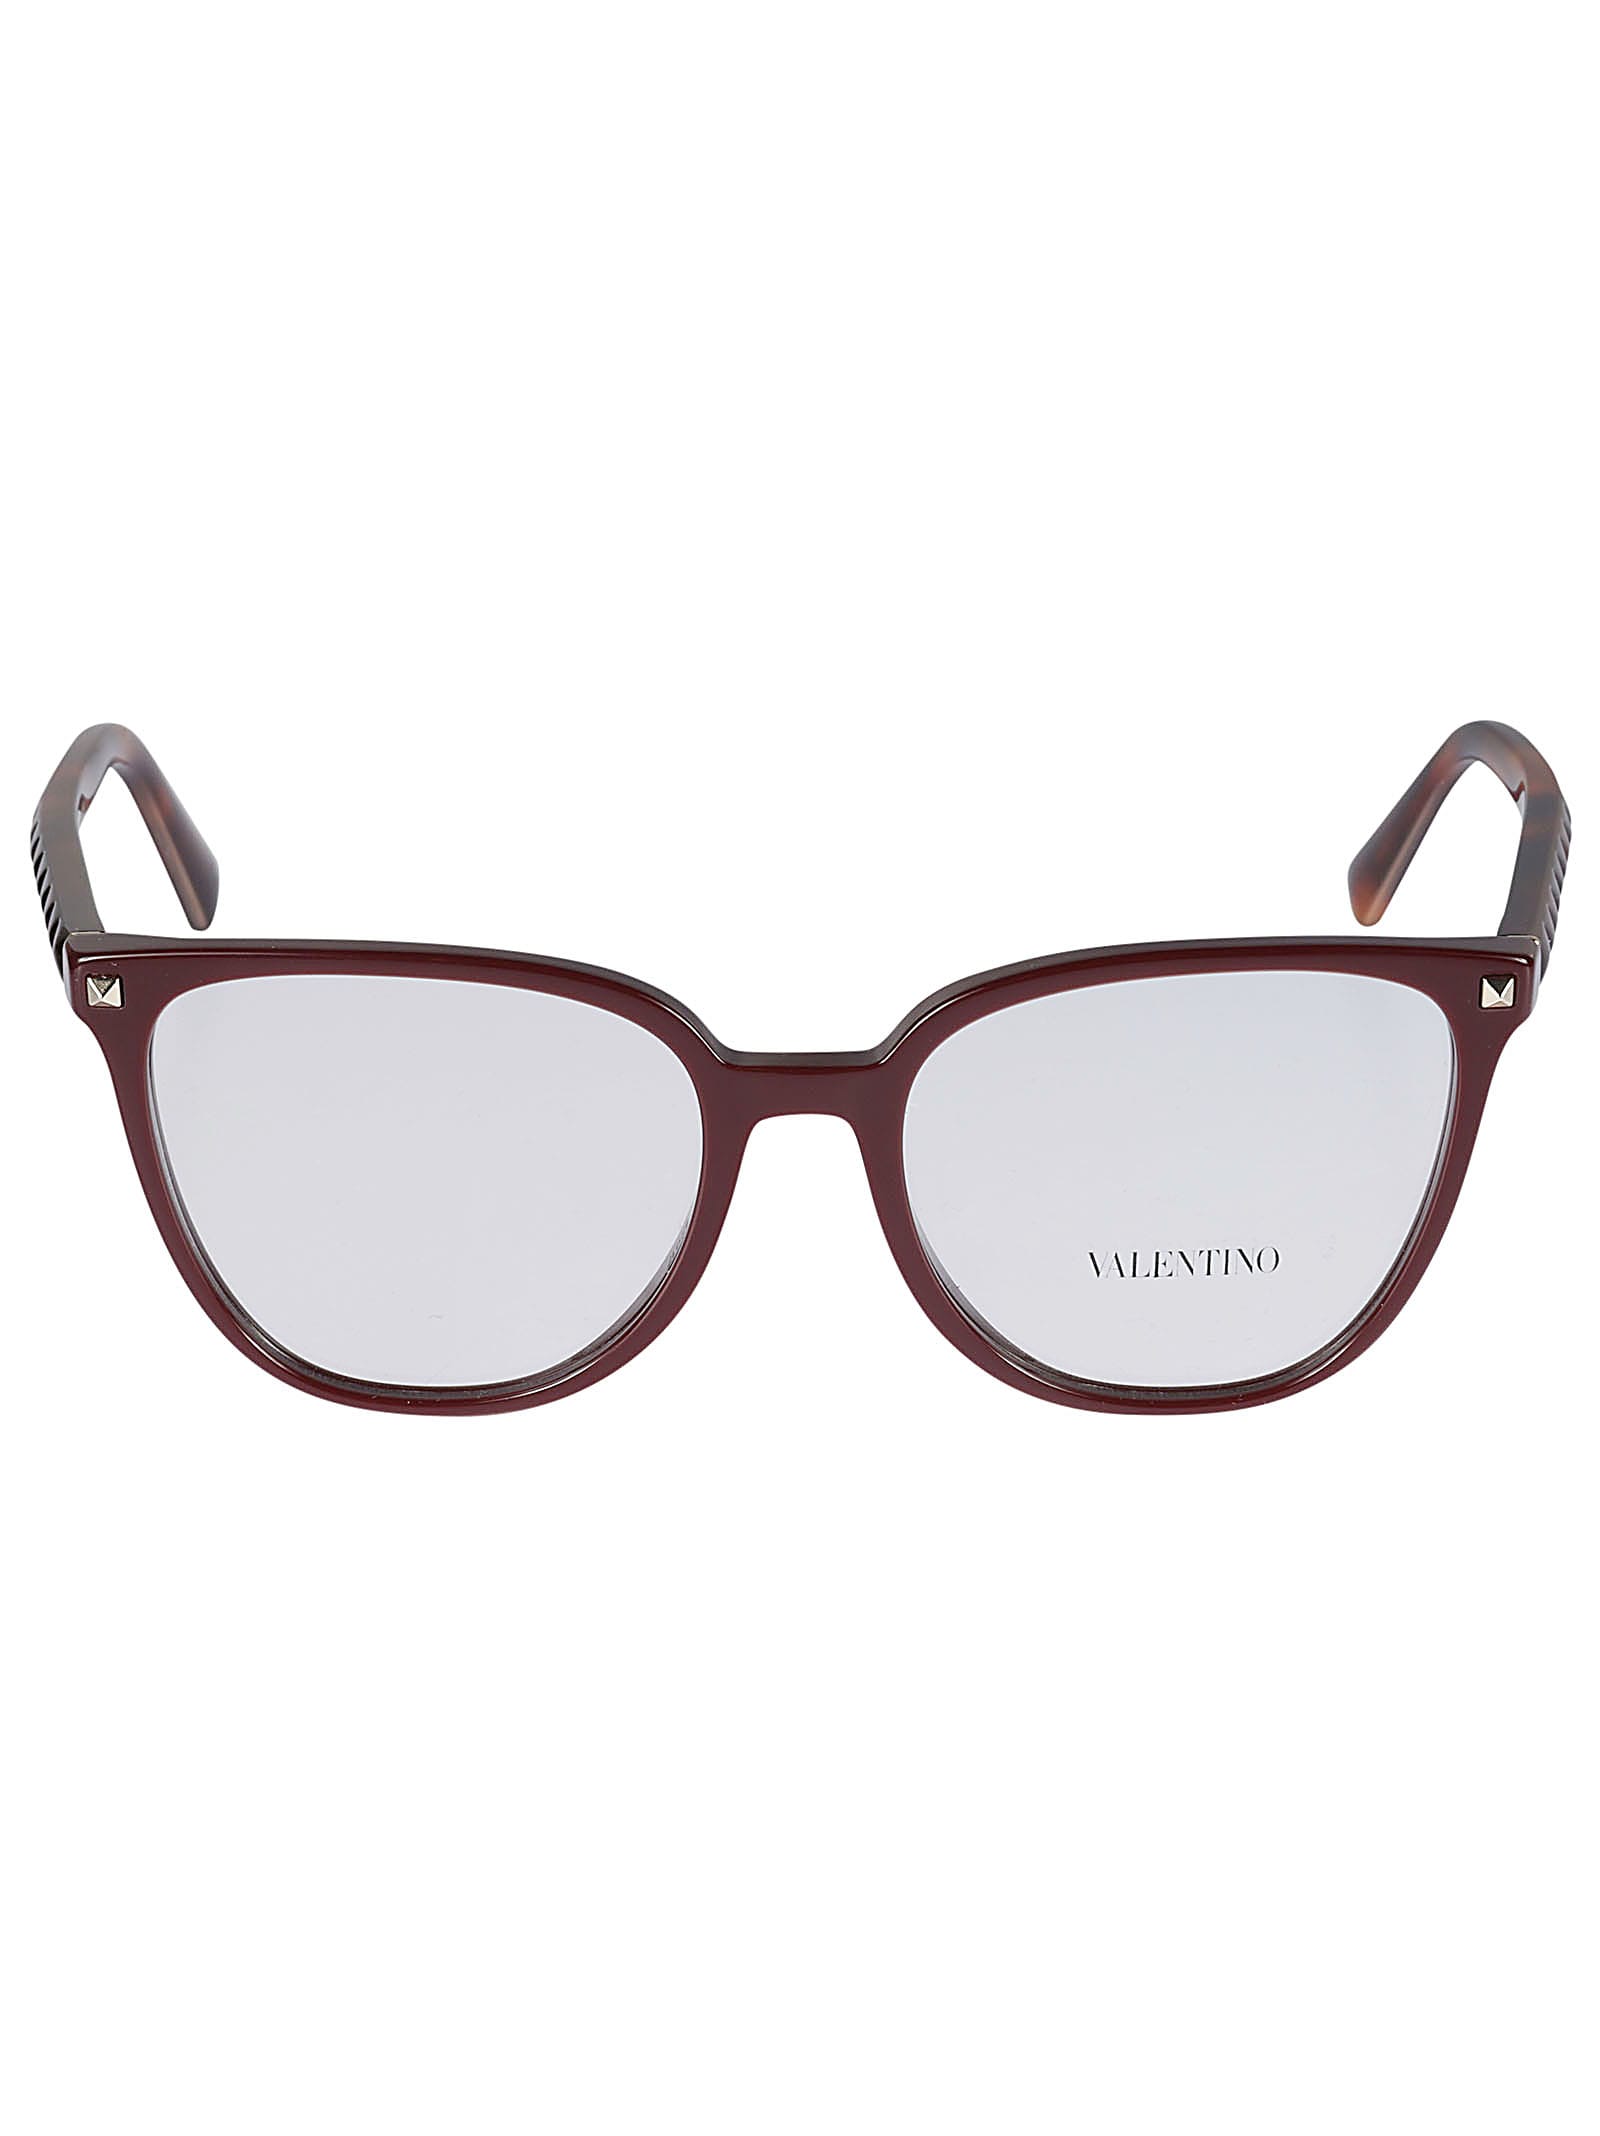 Valentino Vista5120 Glasses